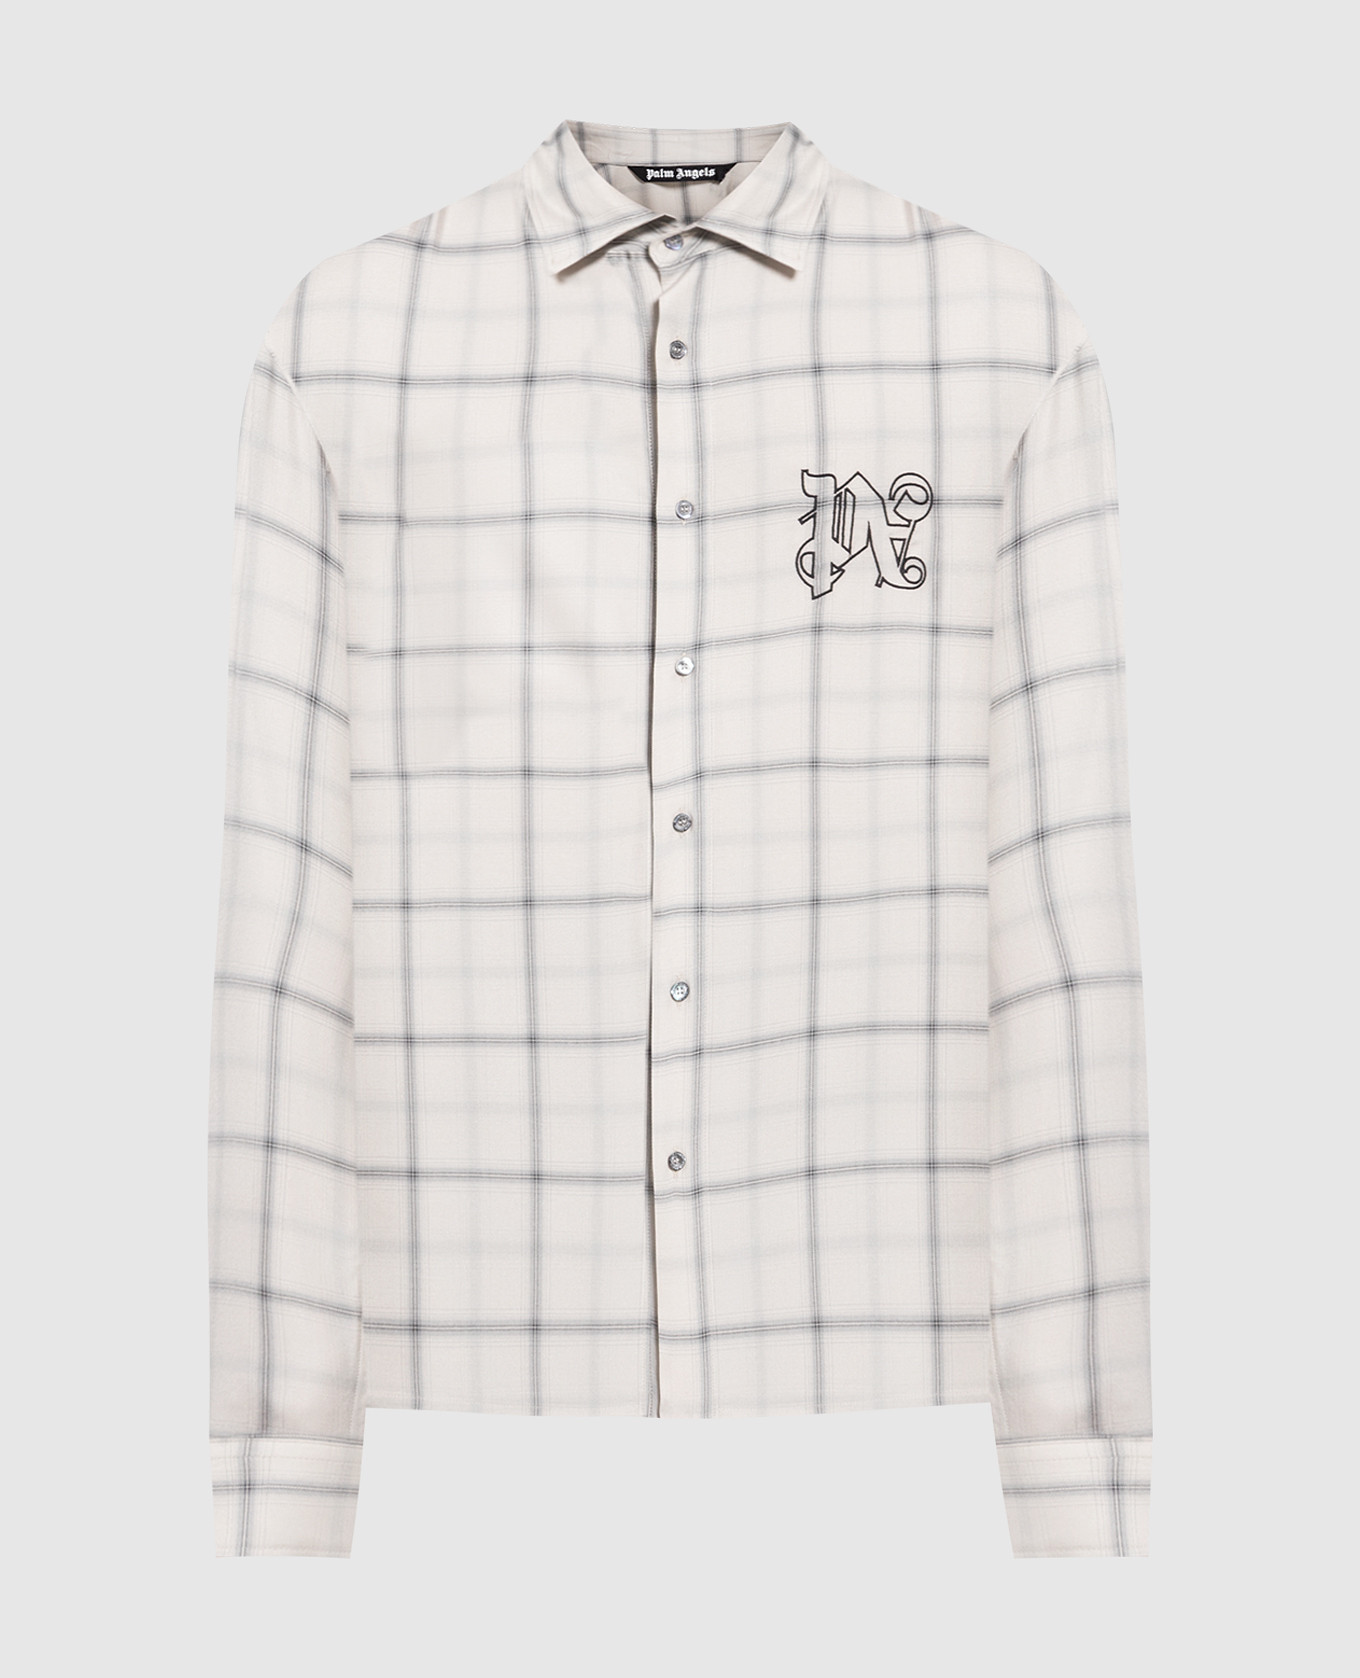 Gray checkered shirt with monogram